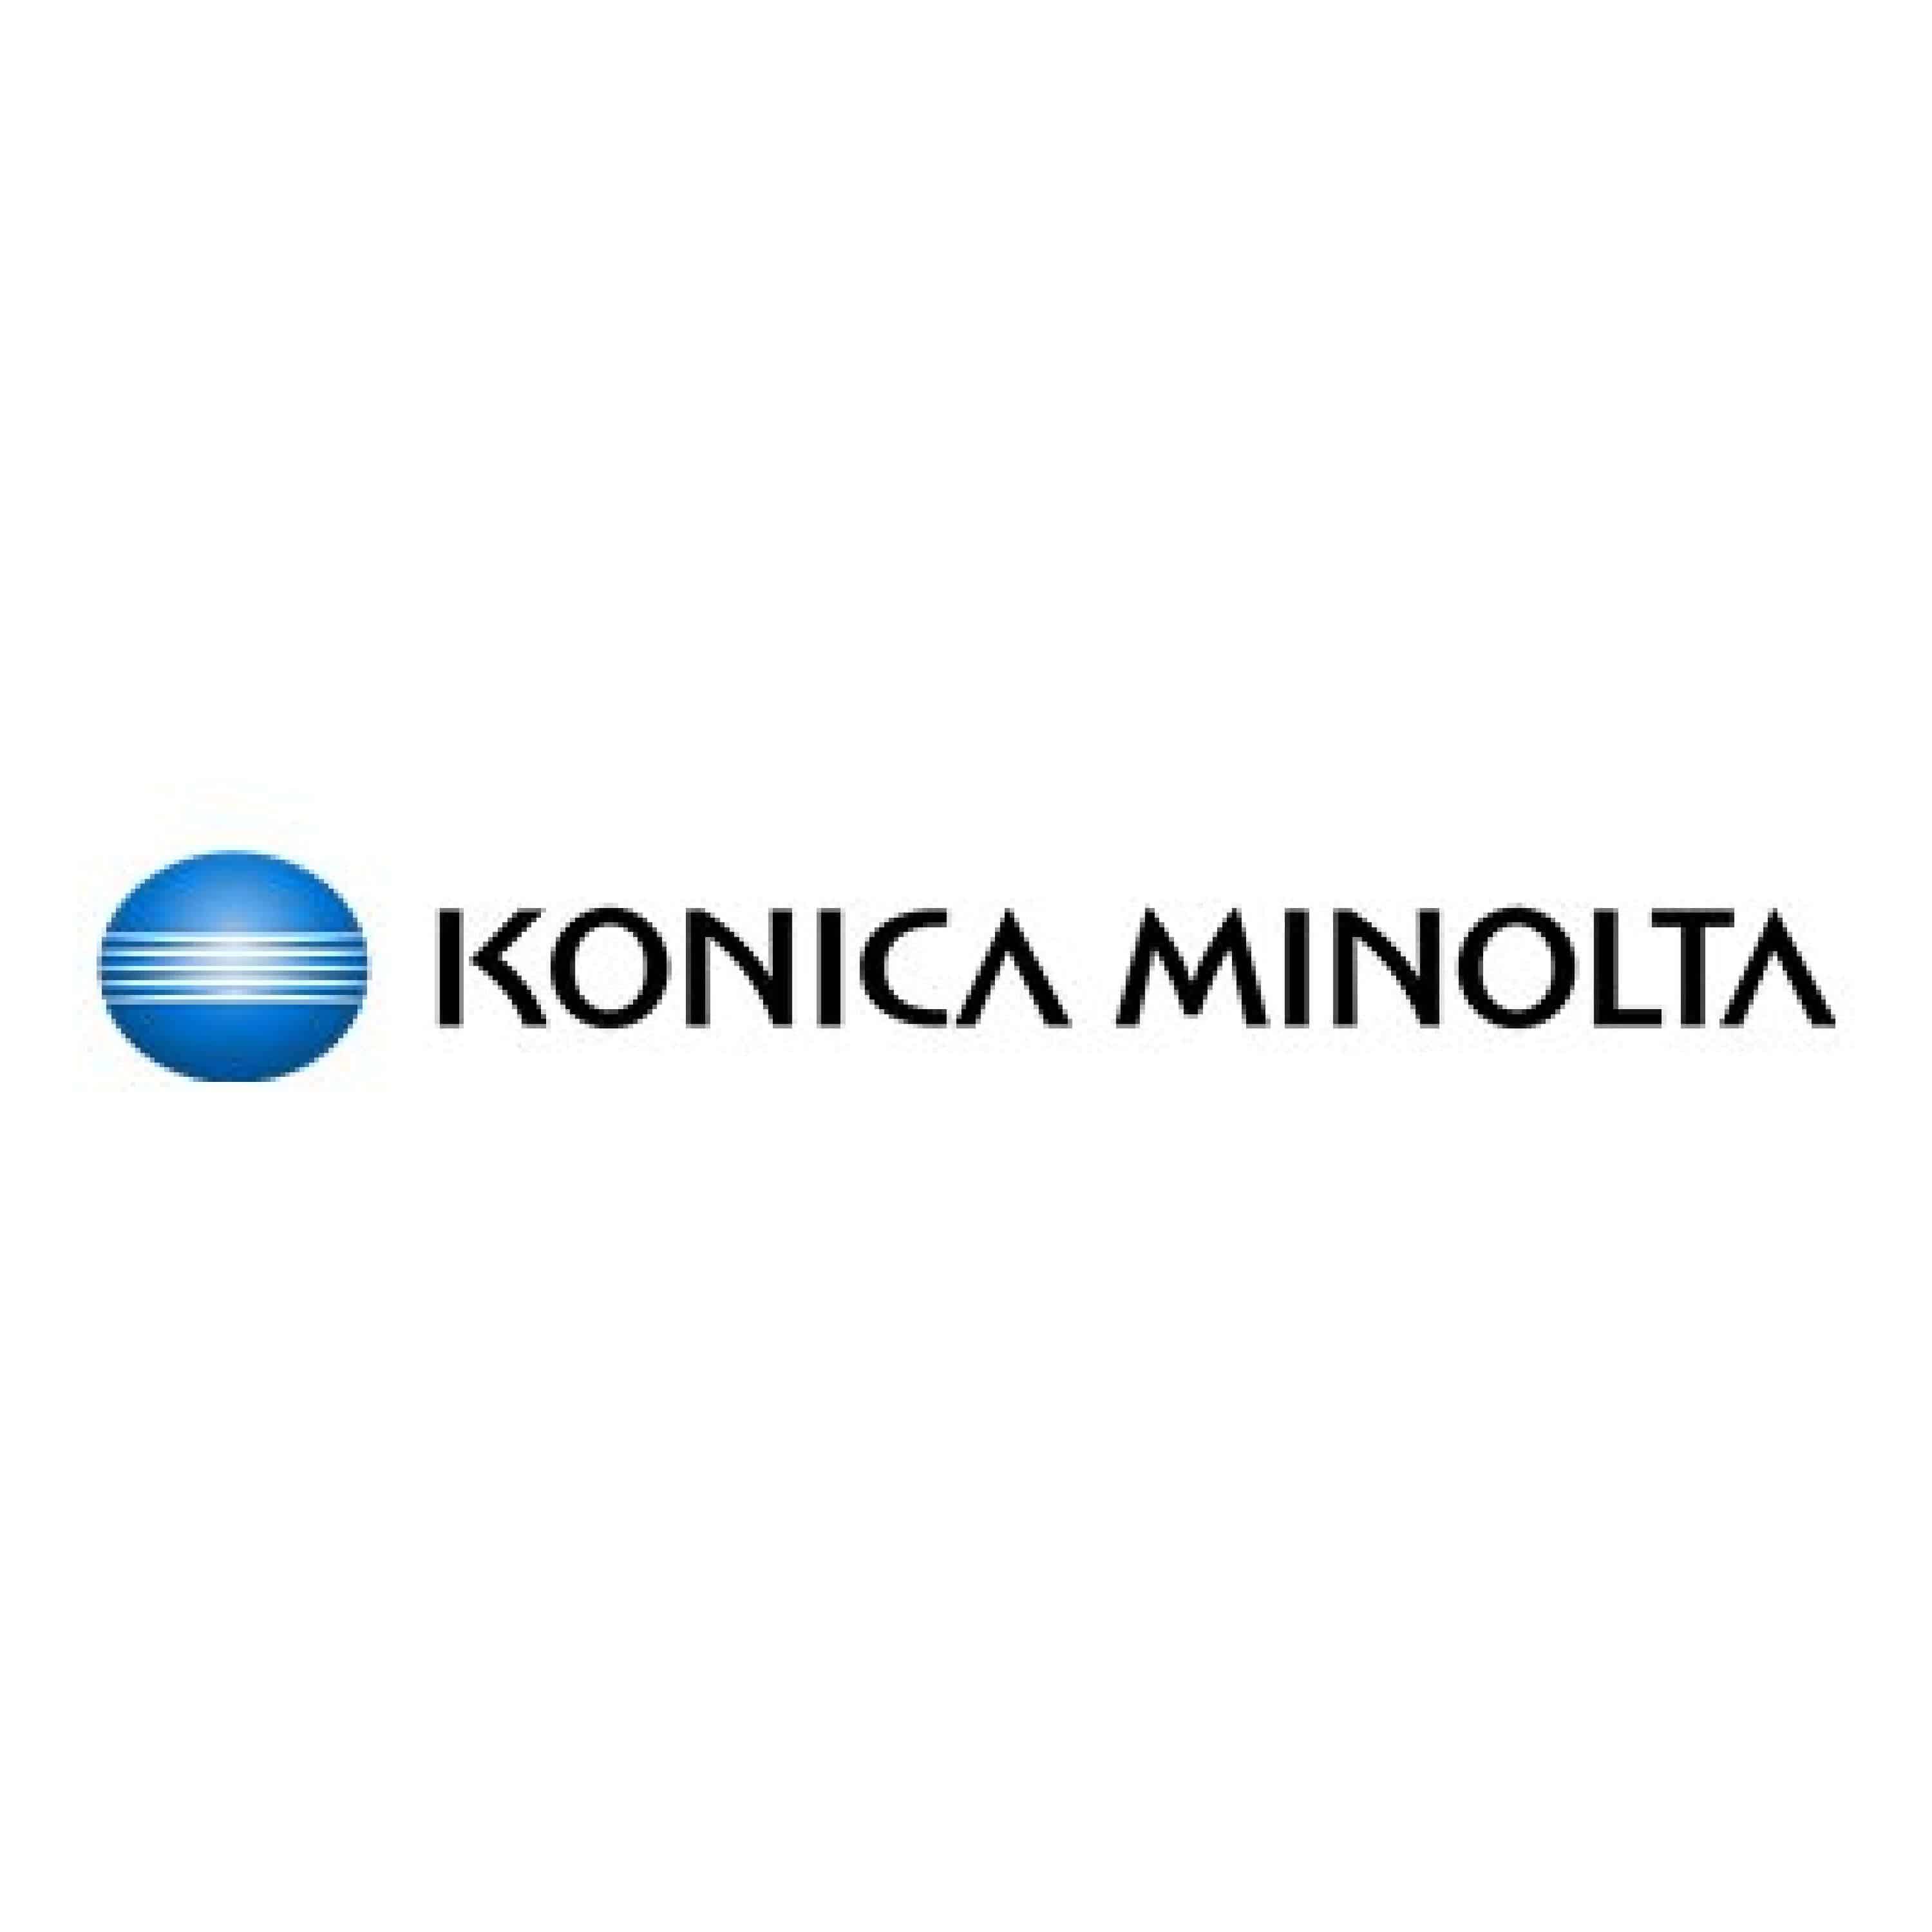 Original Toner Konica Minolta TN-620M / A3VX354 Magenta